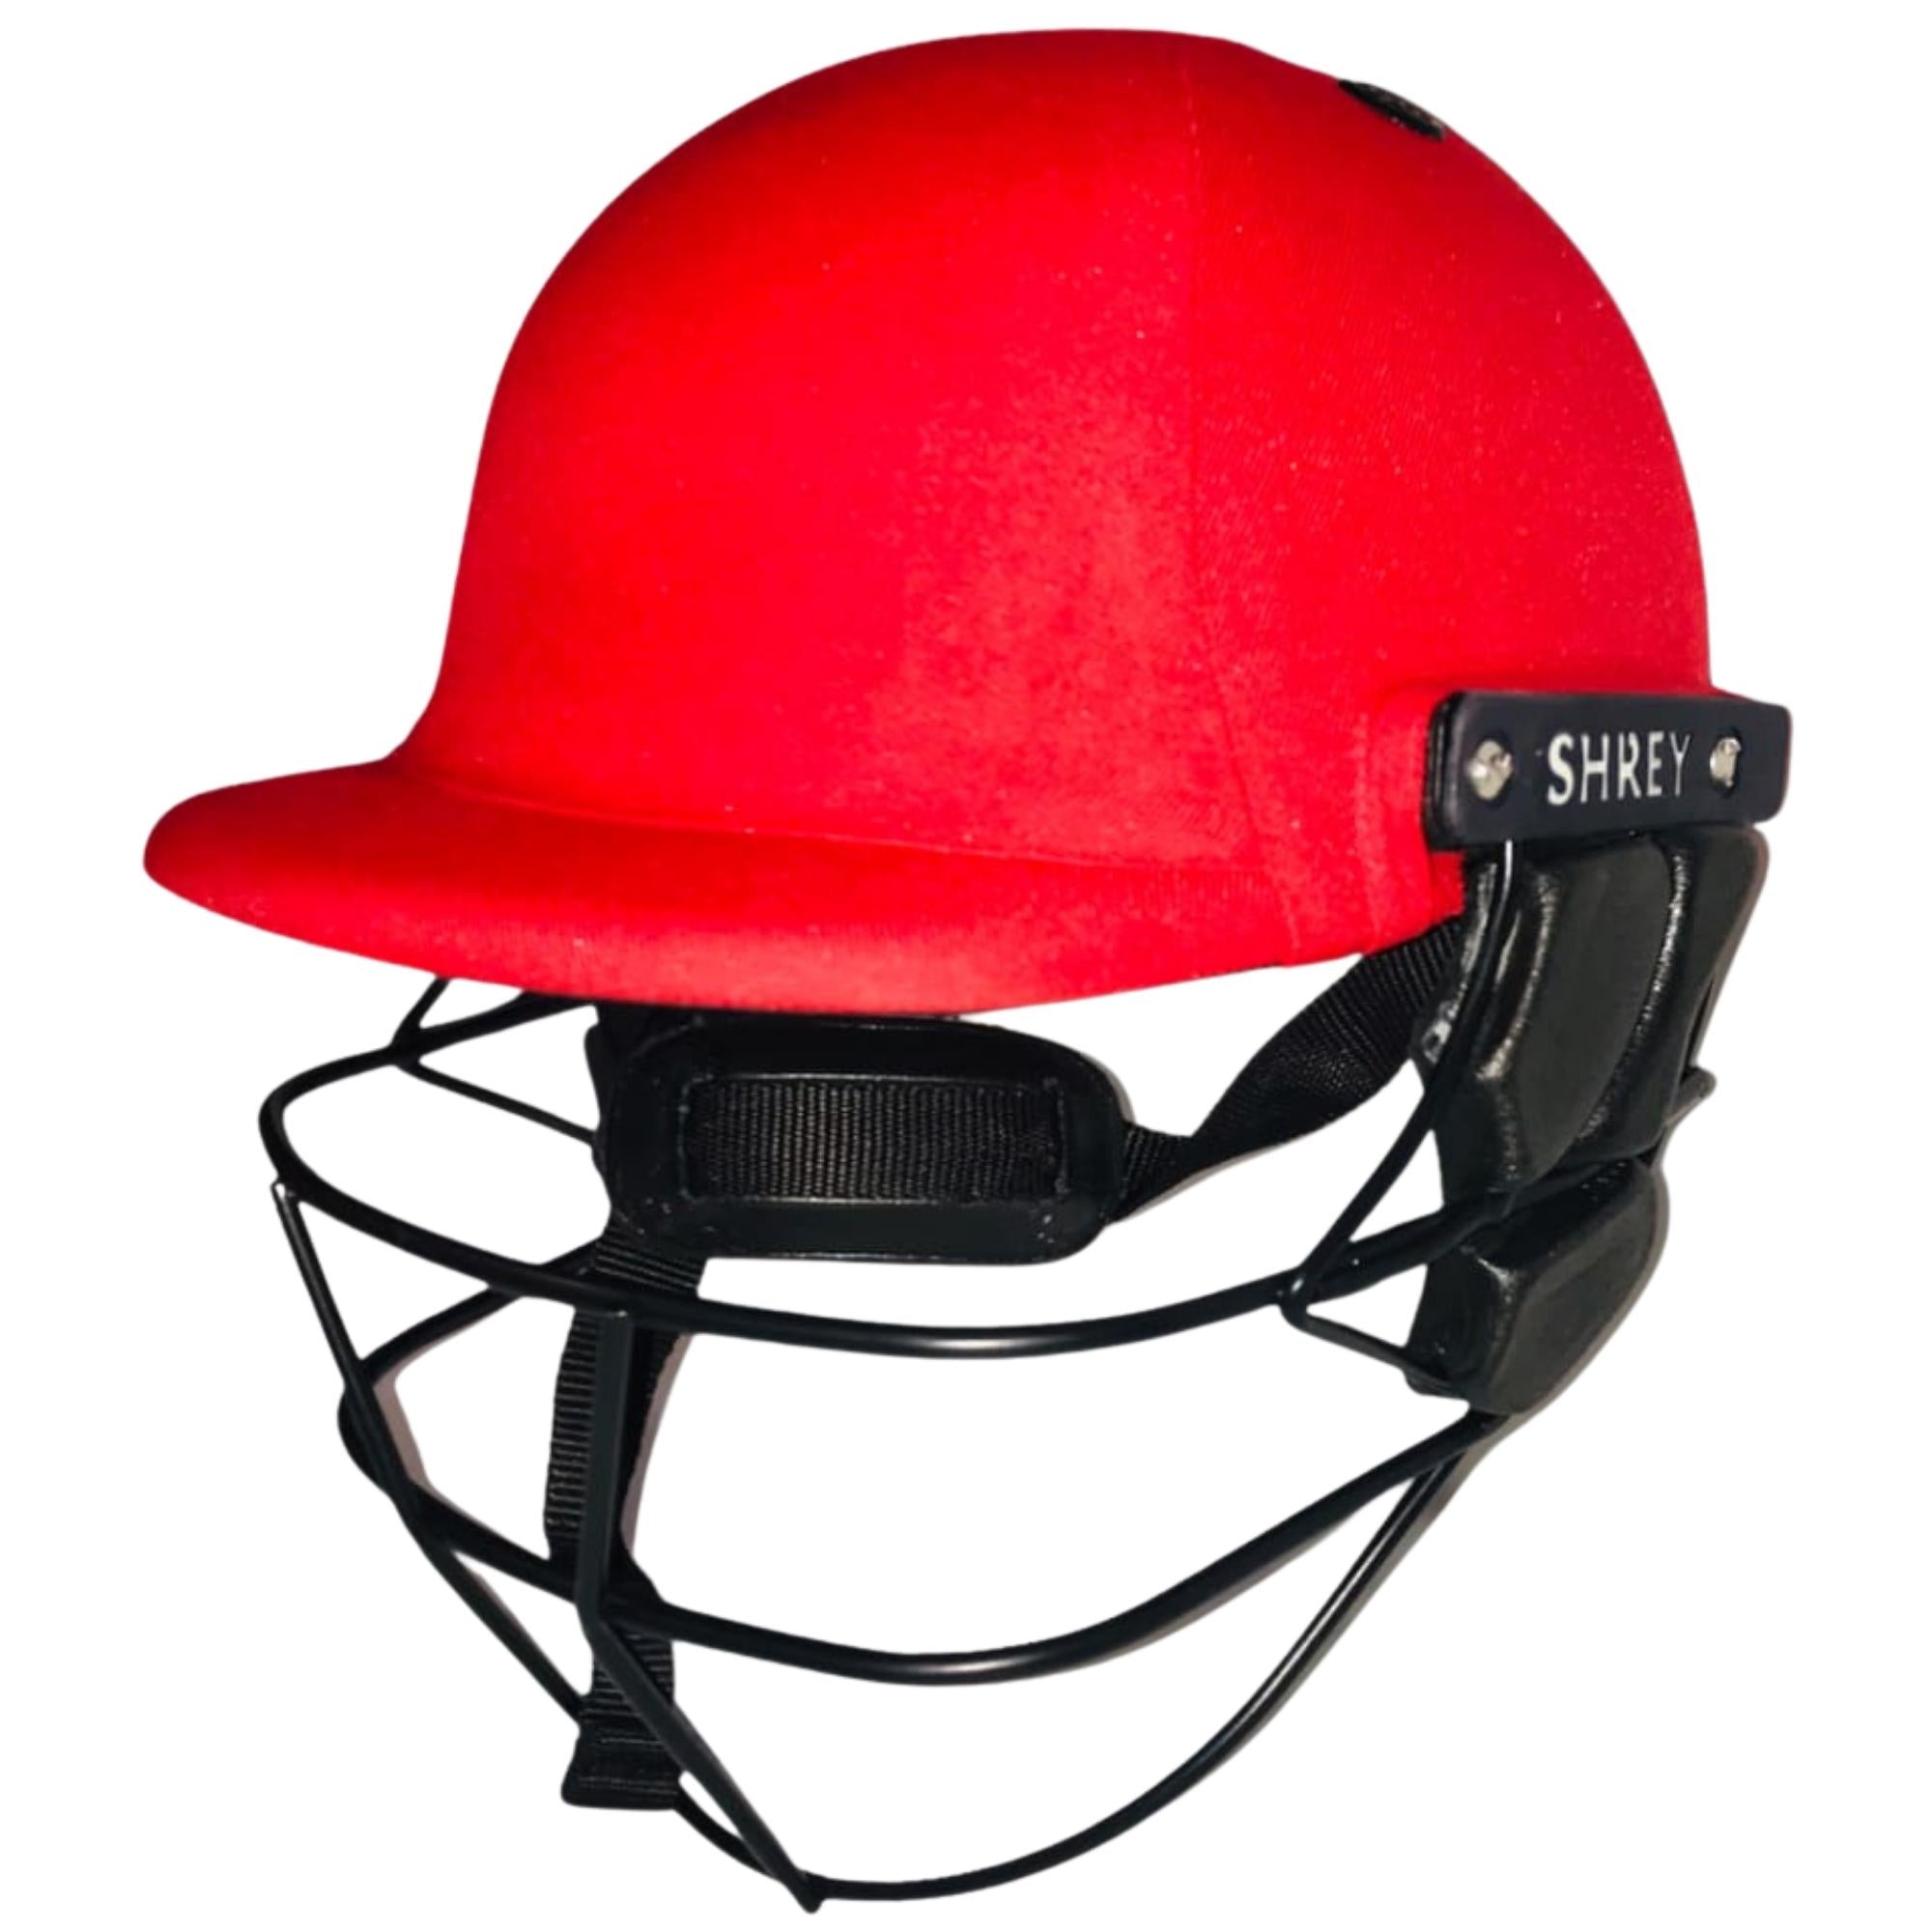 Shrey Classic Steel Cricket Helmet 2022